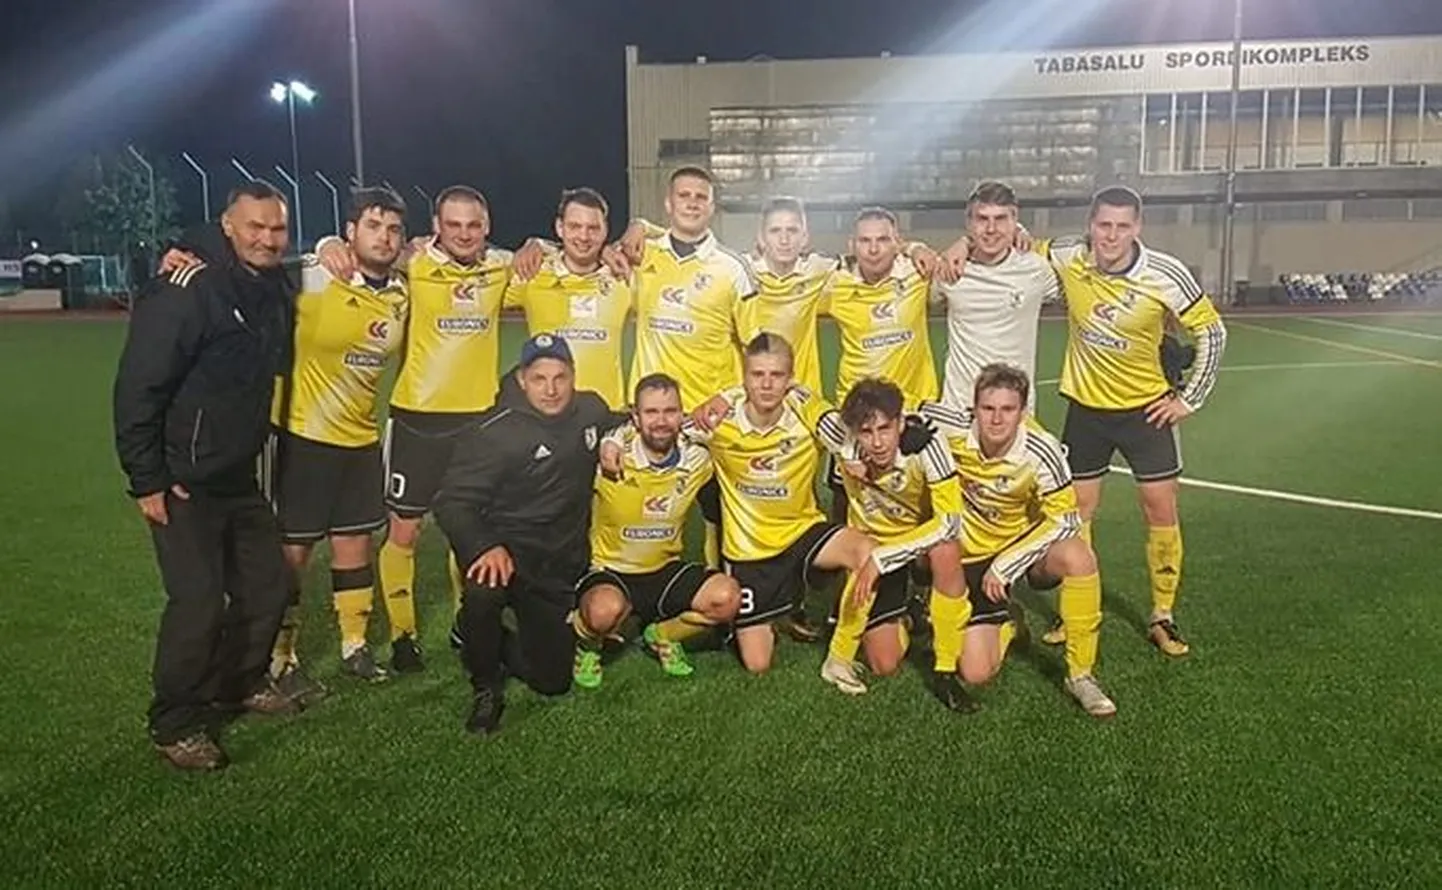 Футбольная команда ФК "Ярве" после победной кубковой игры на стадионе Табасалу.